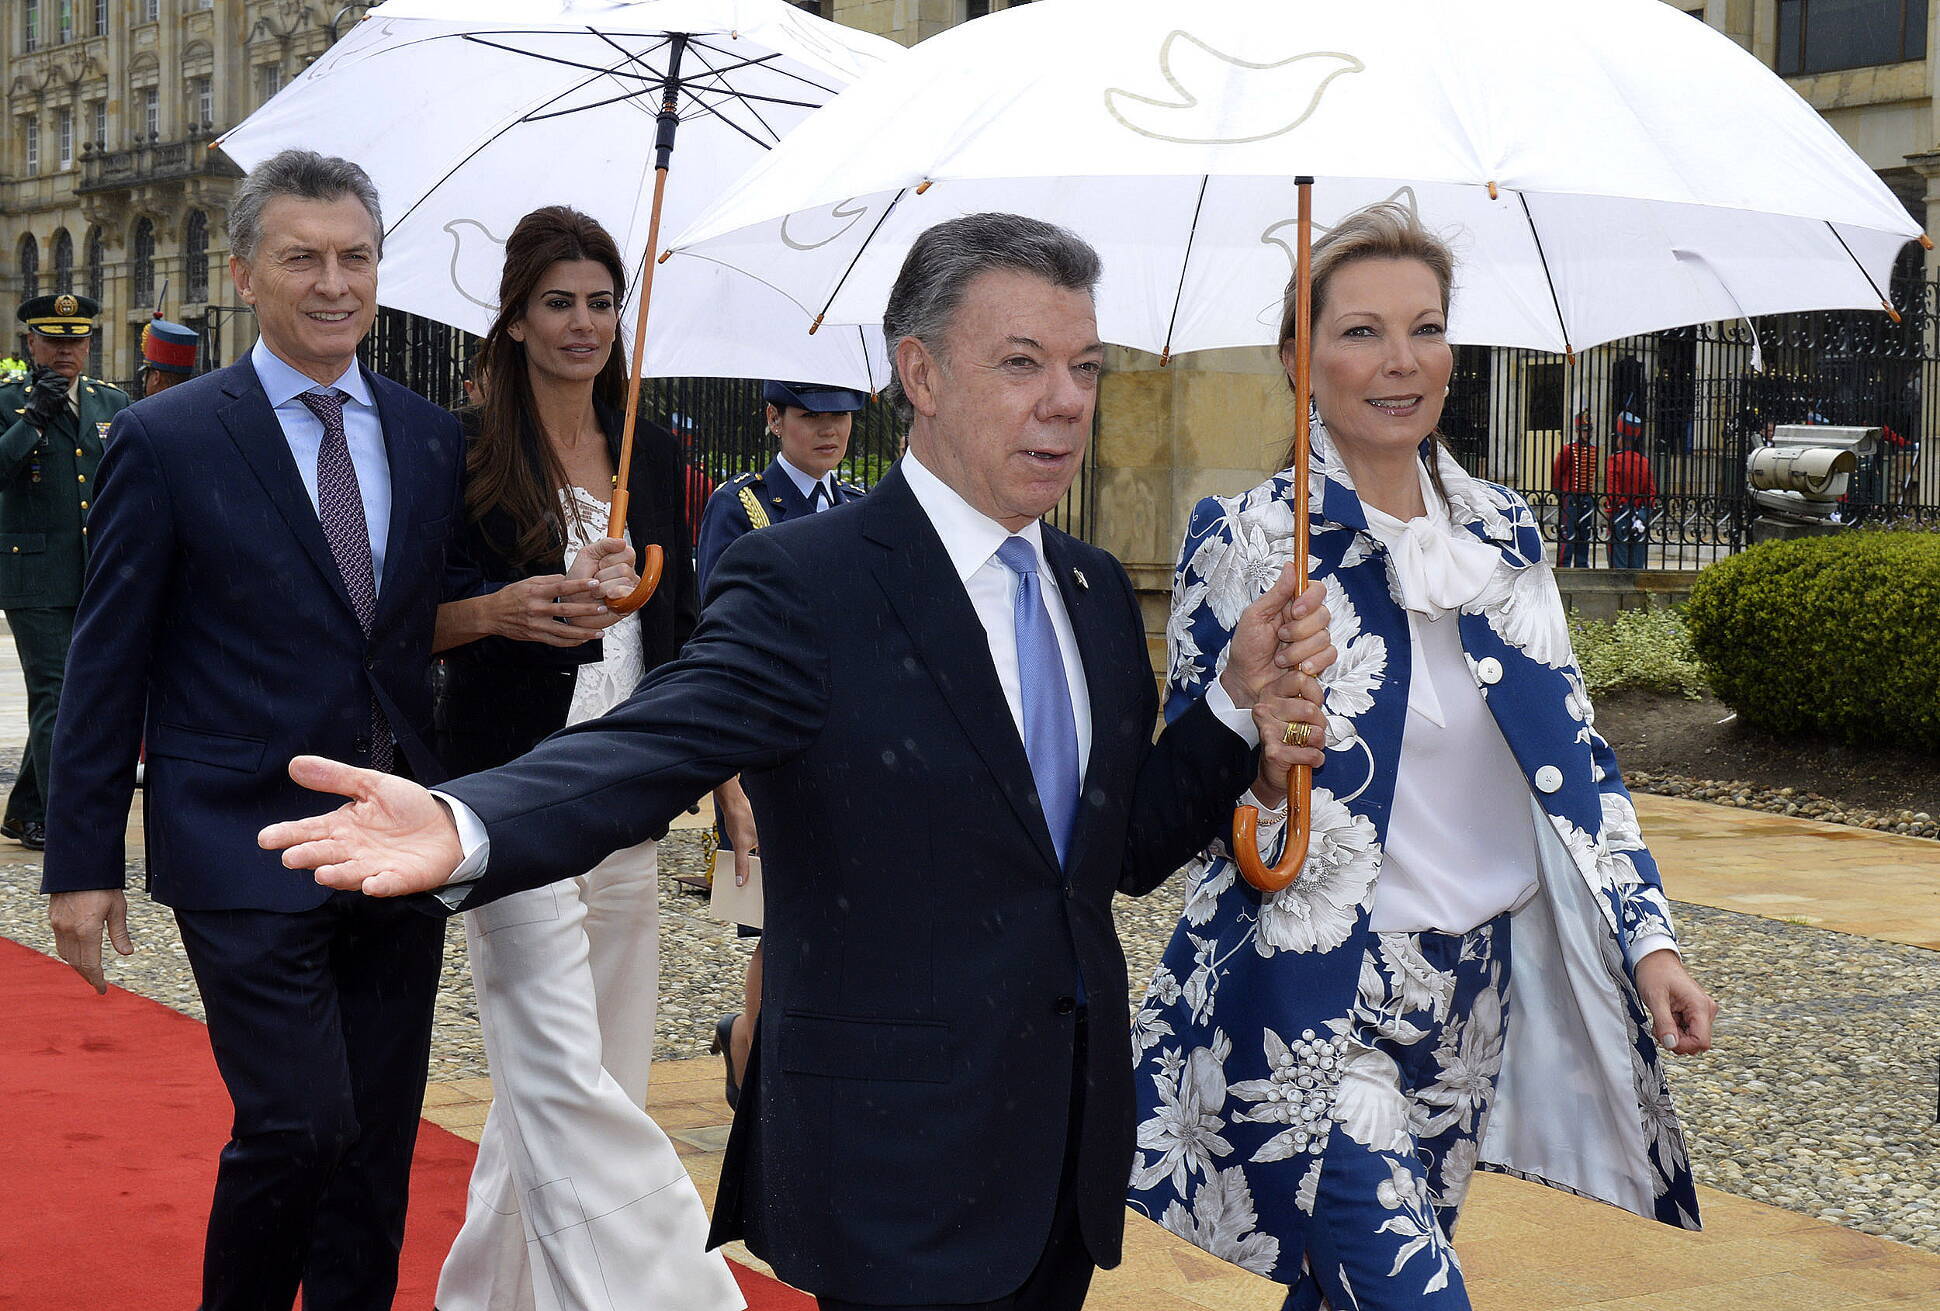 El presidente Macri se reunió con su par colombiano en Bogotá